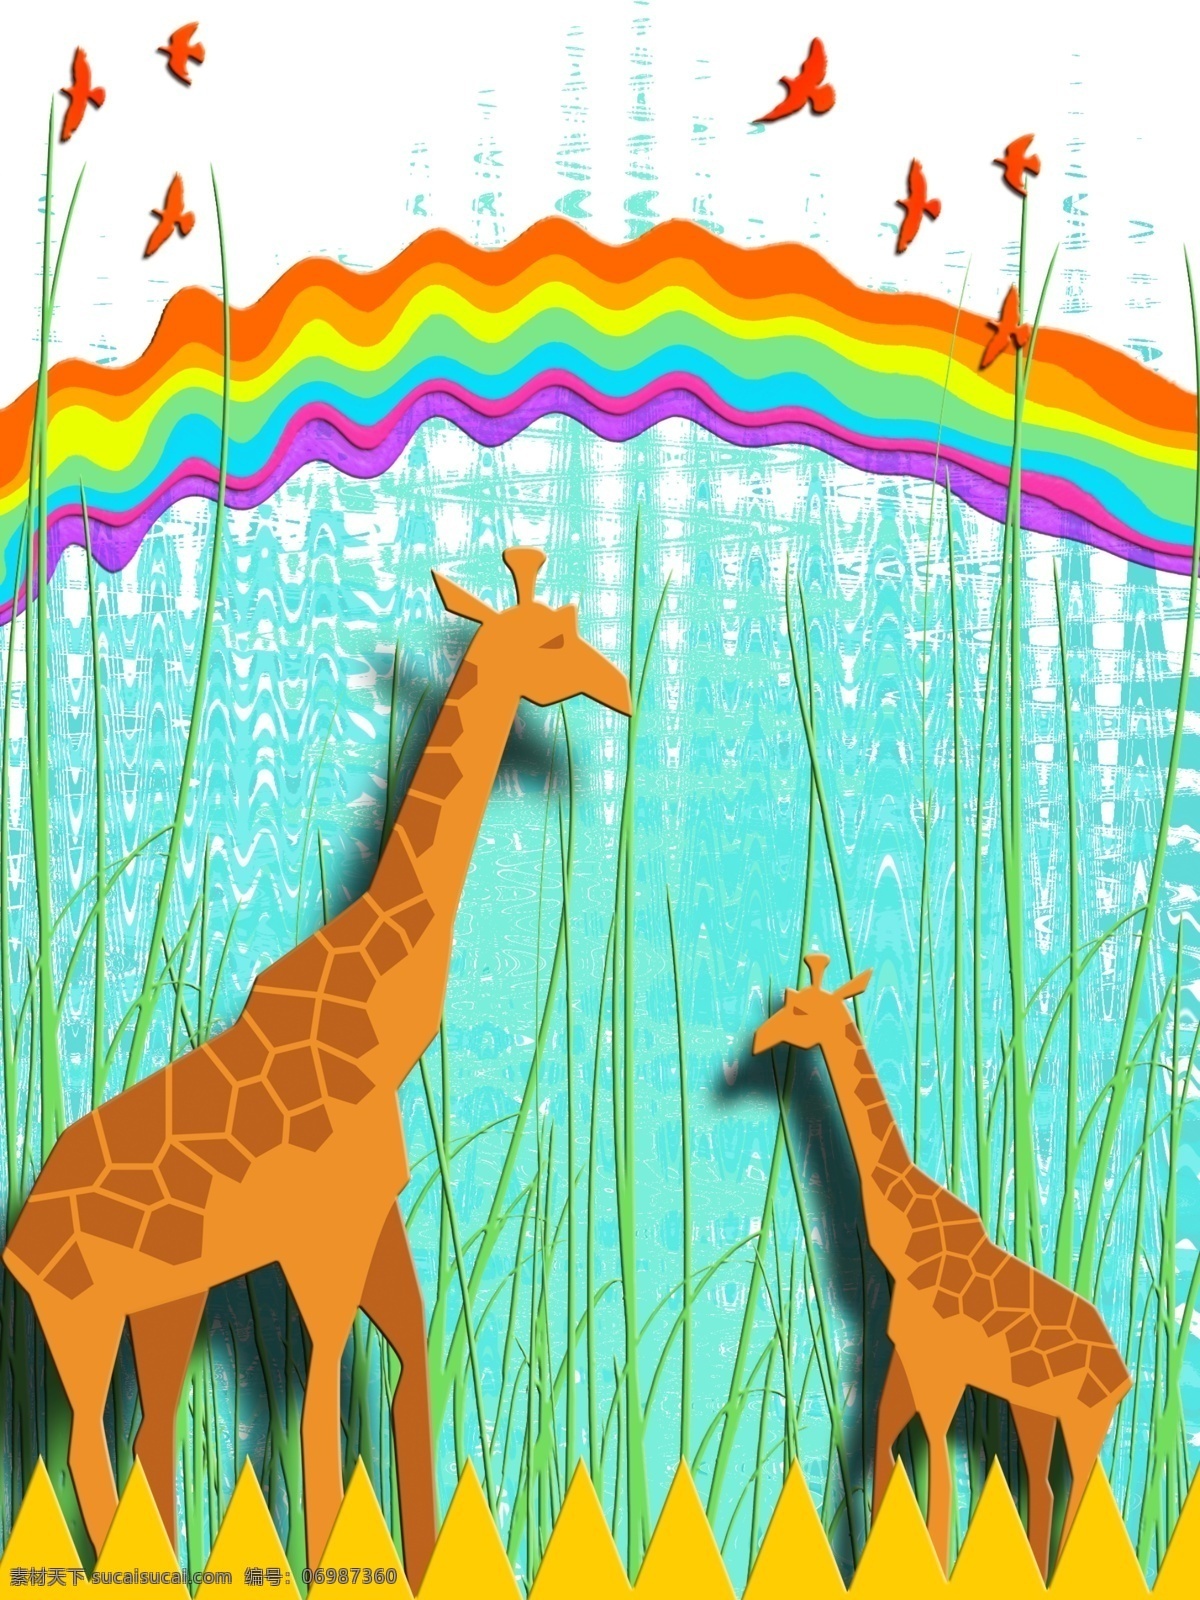 彩虹 剪纸 长颈鹿 客厅 装饰画 儿童画 波浪肌理 一联画 客厅装饰画 剪纸长颈鹿 红色飞鸟